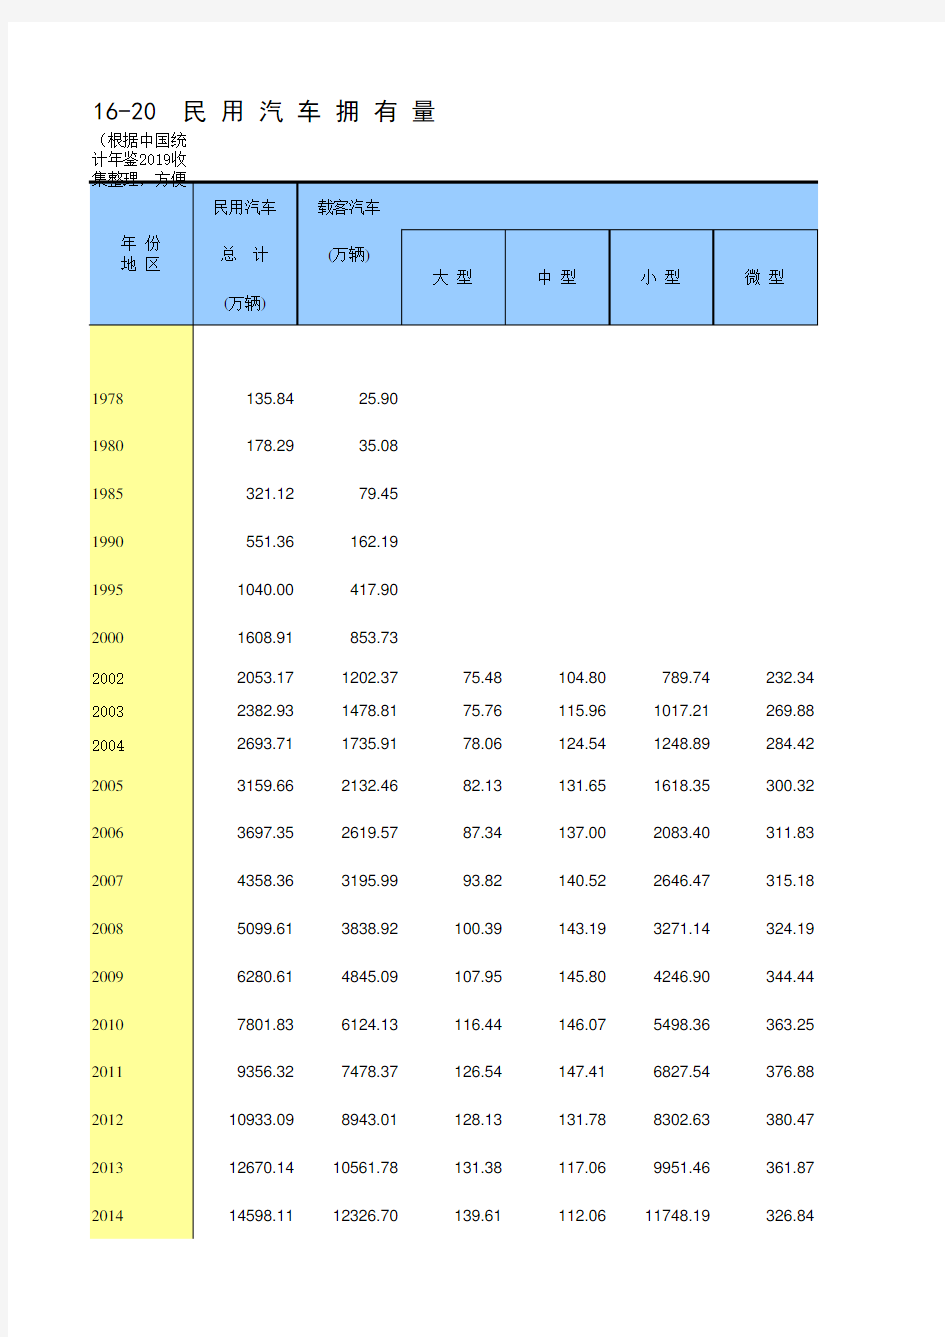 16-20  中国统计年鉴数据处理：民用汽车拥有量(仅全国指标,便于2002-2018多年数据分析对比)